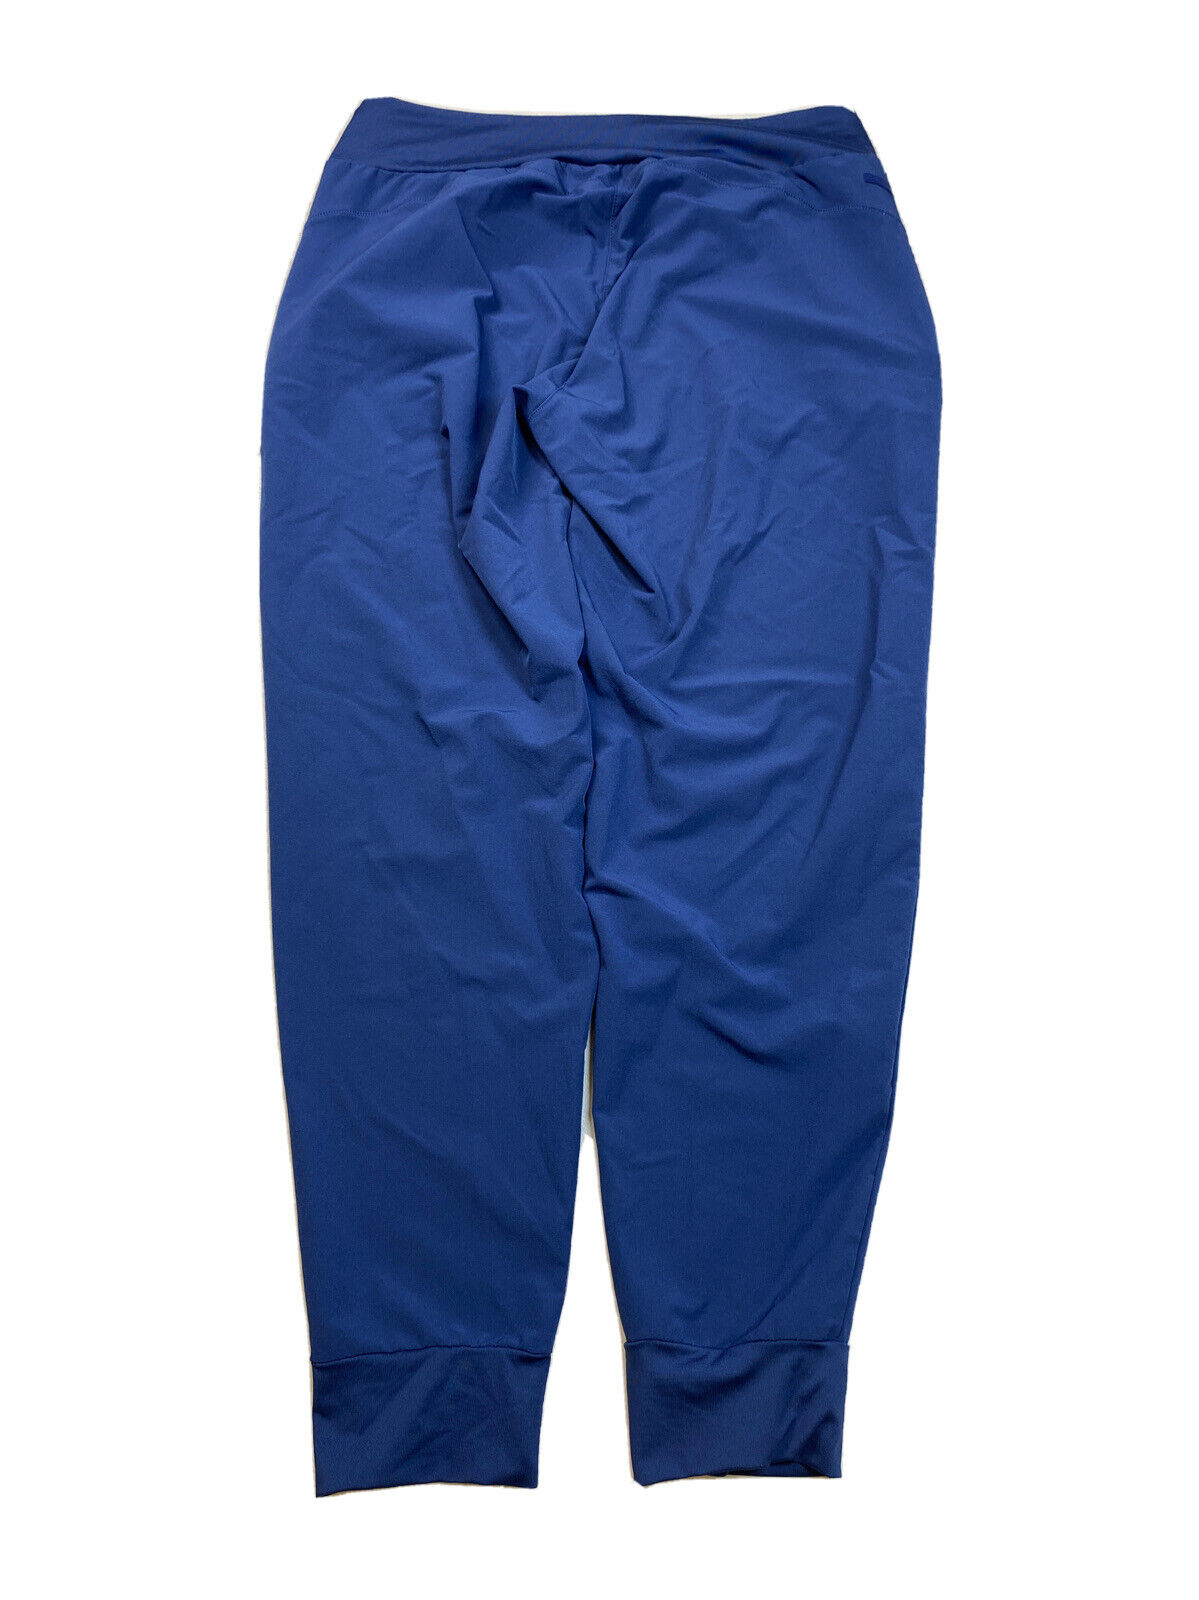 Adidas Pantalones deportivos tipo jogger con cintura elástica azul para mujer - M